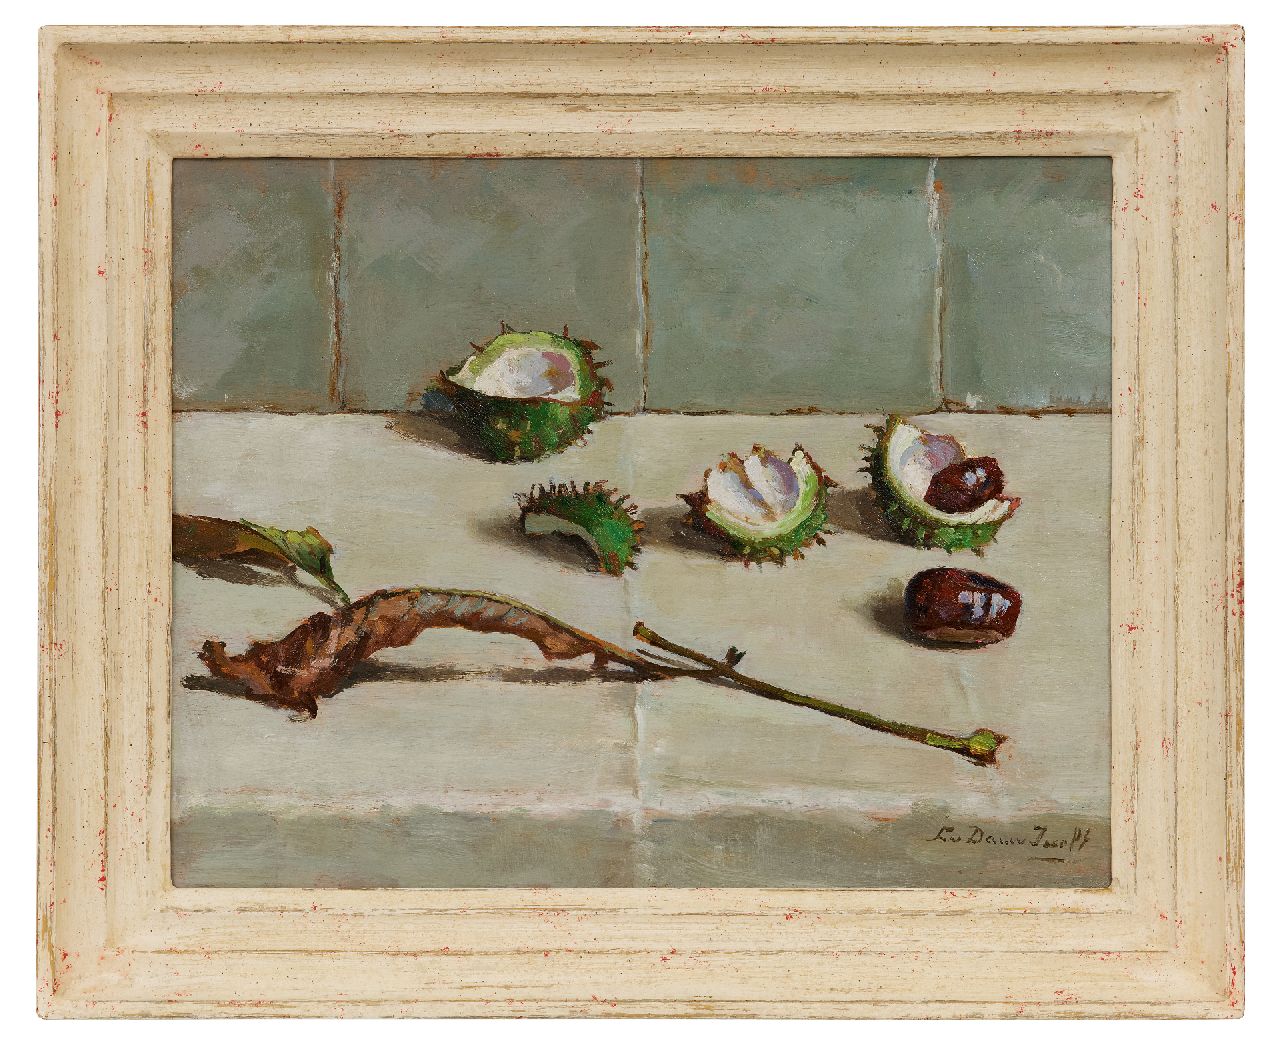 Dam van Isselt L. van | Lucie van Dam van Isselt, Stilleven van kastanjes, bolsters en blad, olieverf op paneel 31,7 x 40,1 cm, gesigneerd rechtsonder